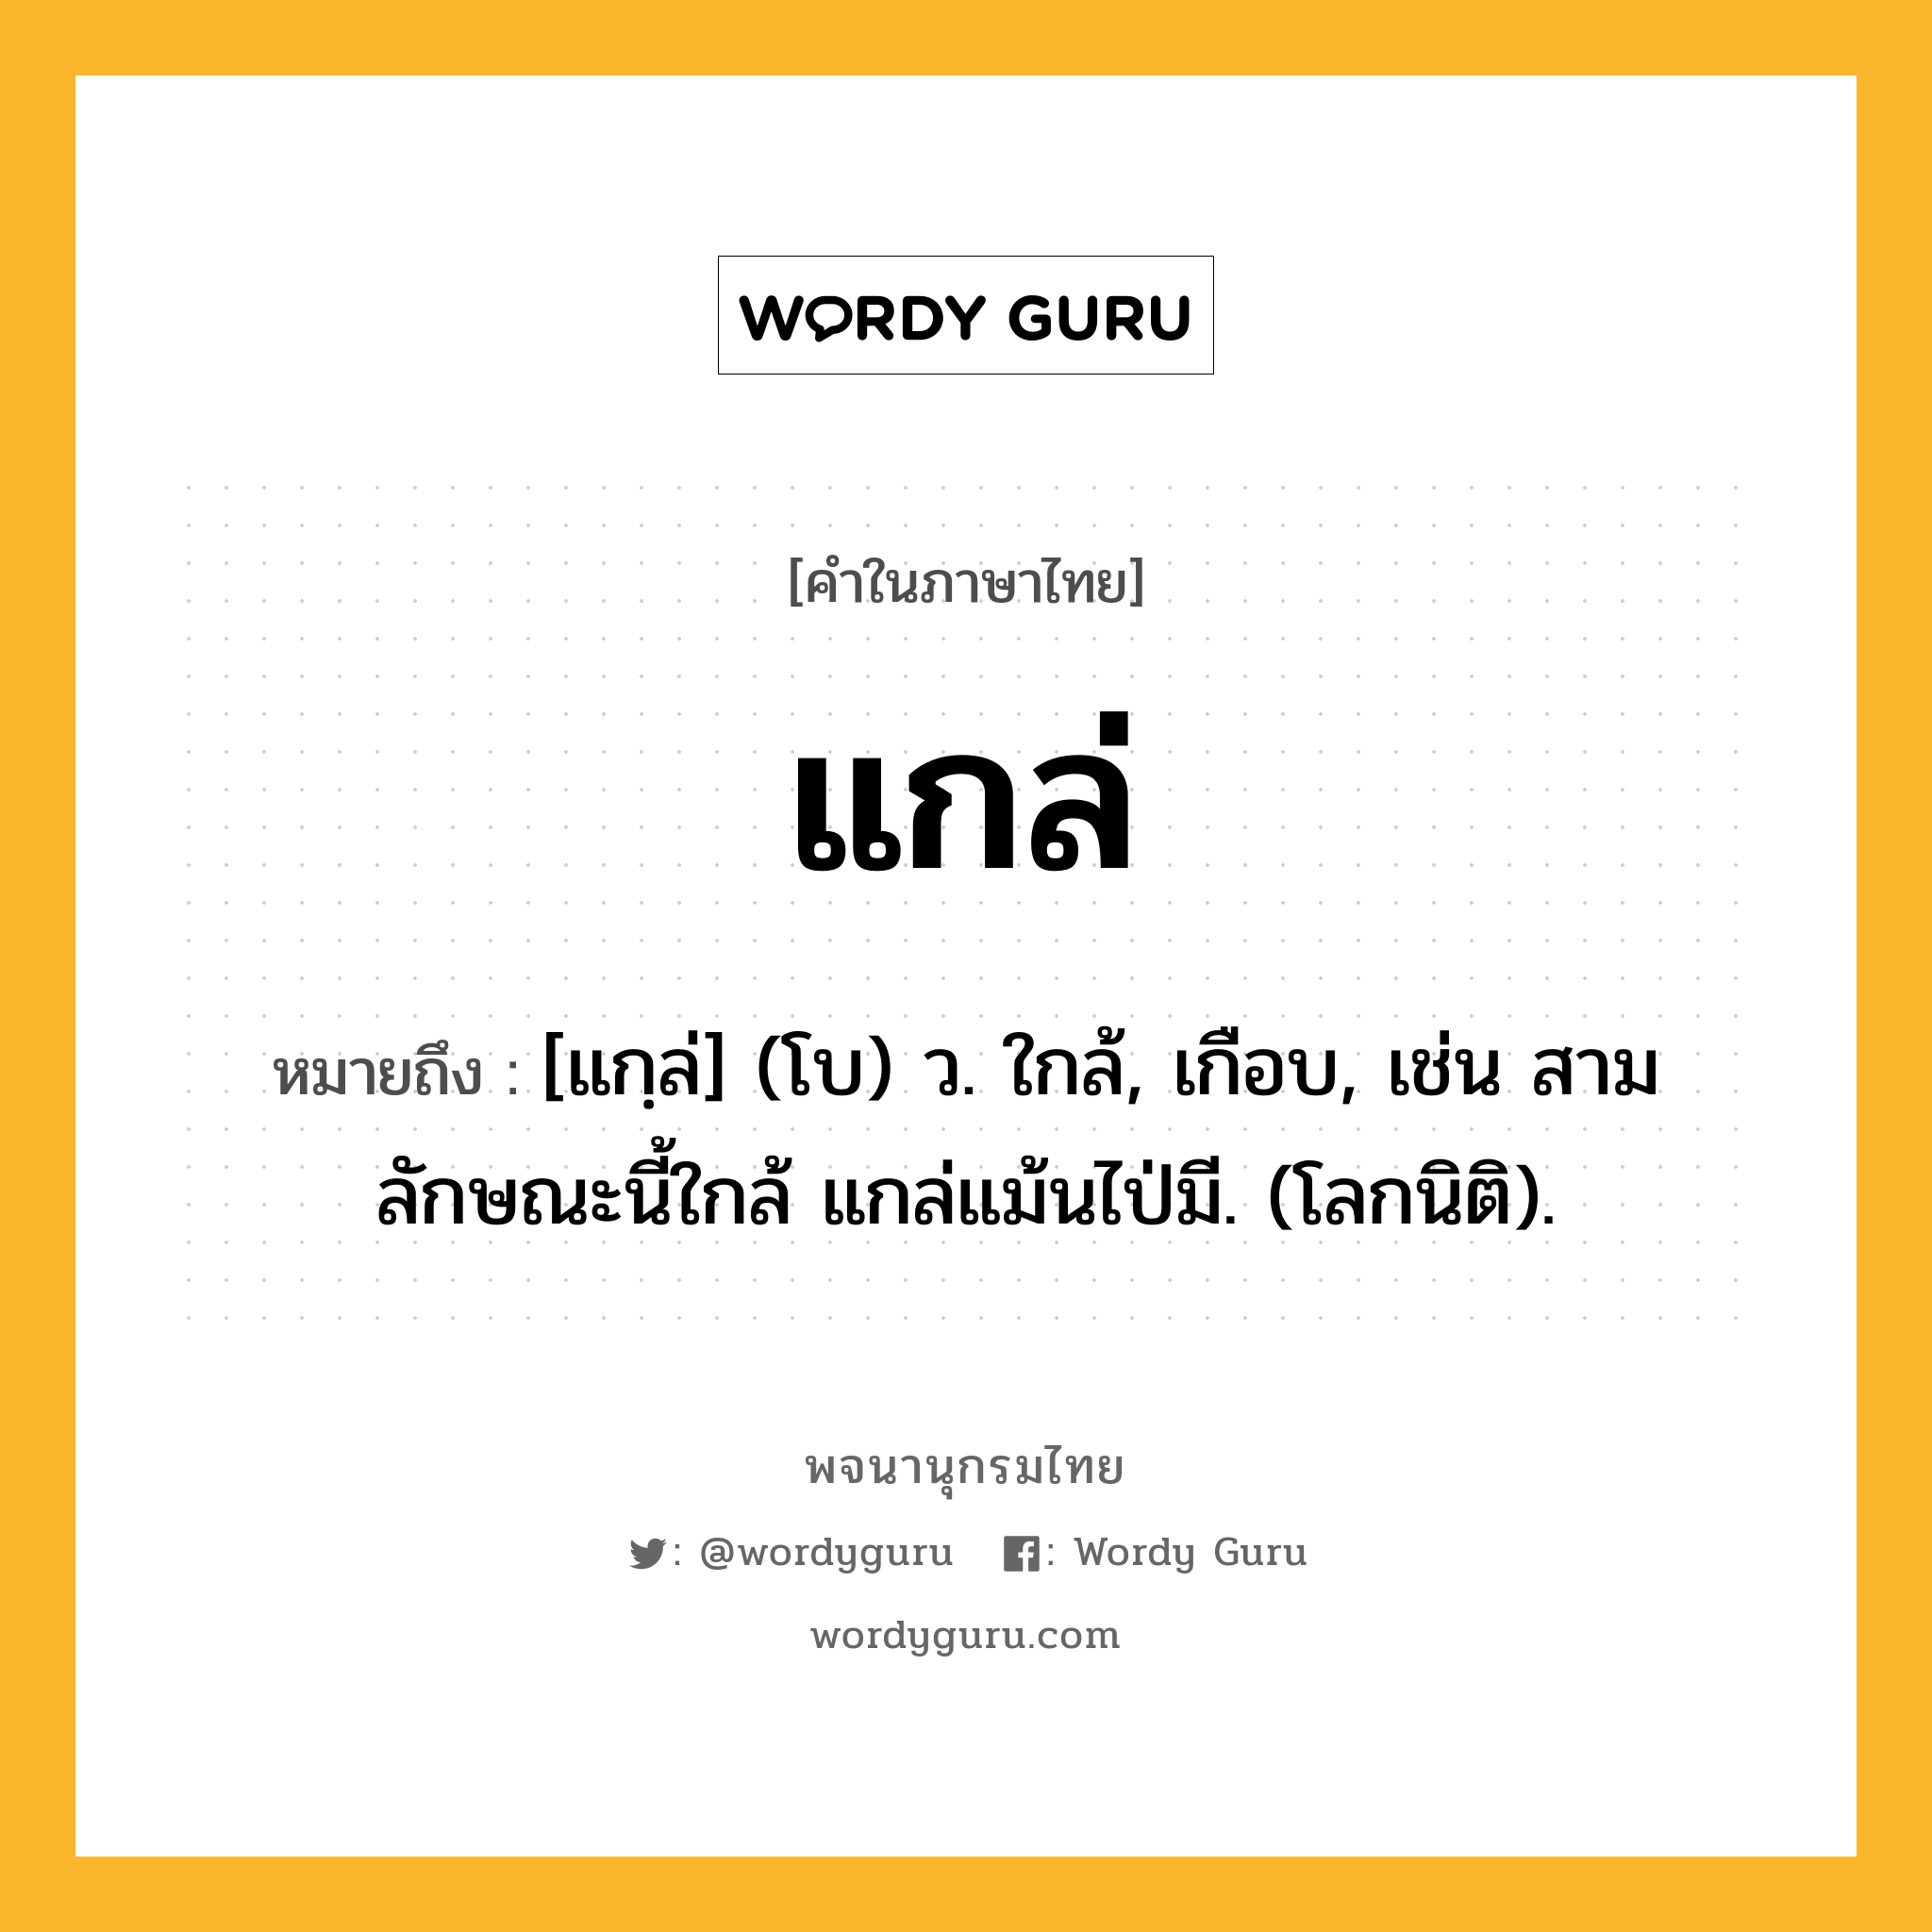 แกล่ ความหมาย หมายถึงอะไร?, คำในภาษาไทย แกล่ หมายถึง [แกฺล่] (โบ) ว. ใกล้, เกือบ, เช่น สามลักษณะนี้ใกล้ แกล่แม้นไป่มี. (โลกนิติ).